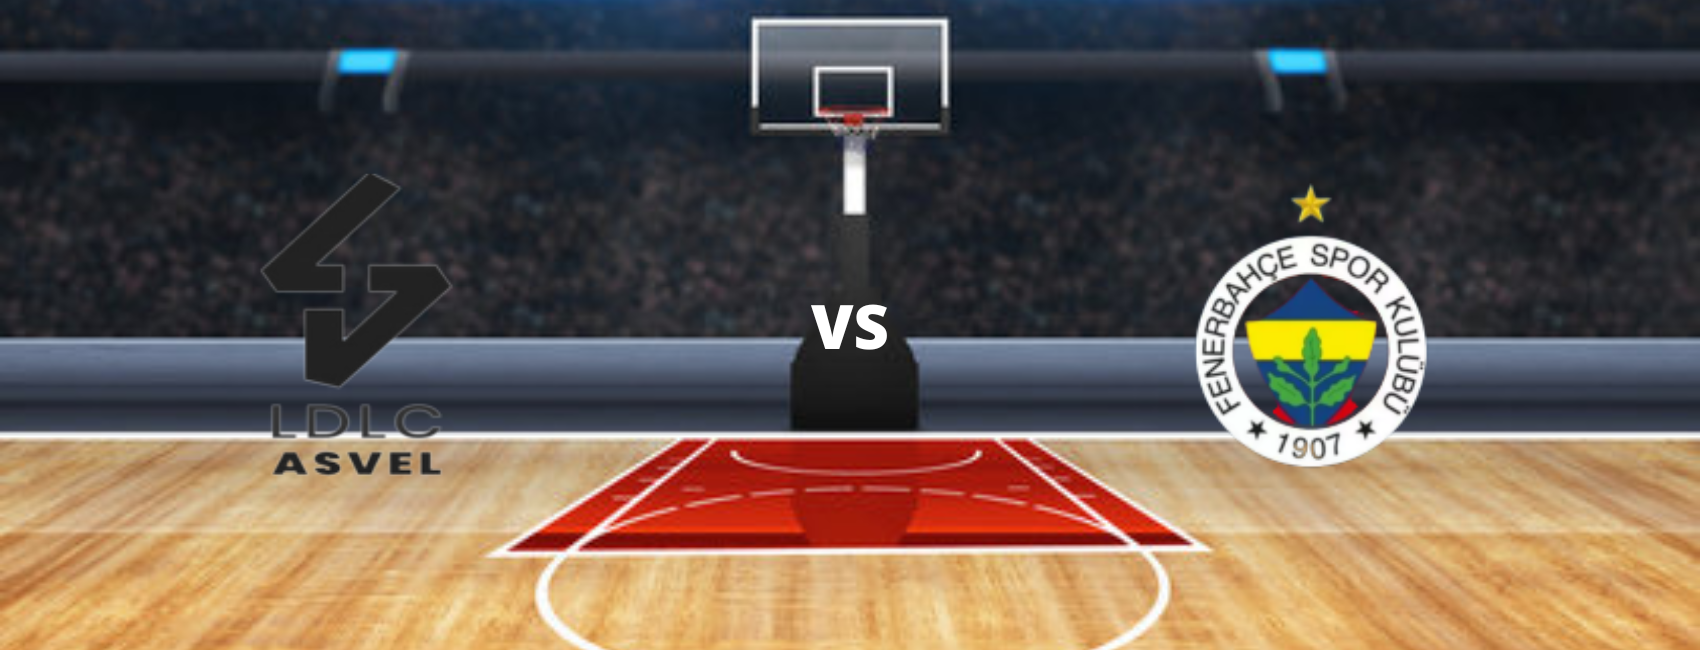 ASVEL Basket vs Fenerbahce Beko Euroleague Tickets on sale now Ticombo